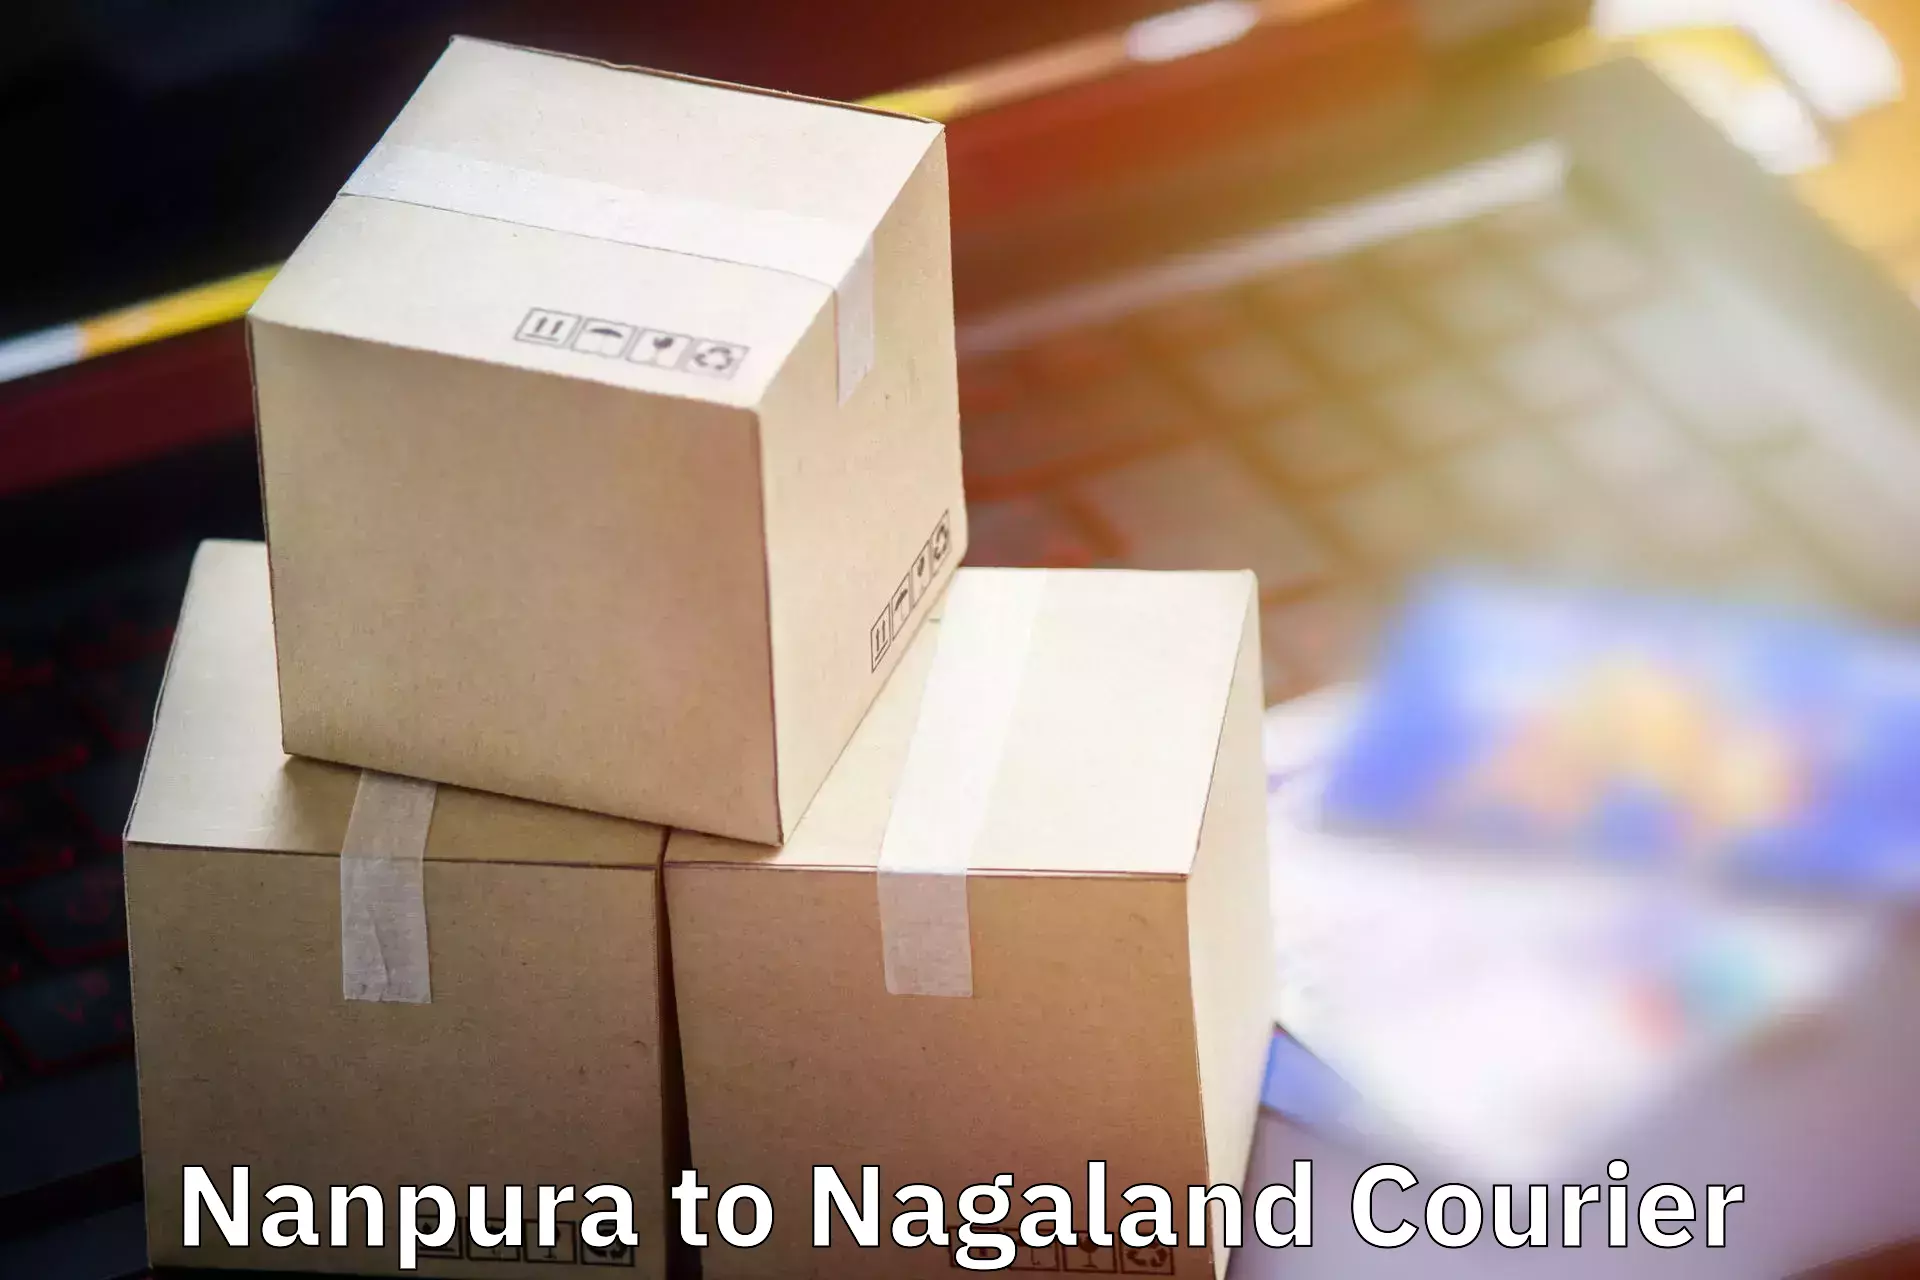 Baggage transport professionals Nanpura to NIT Nagaland